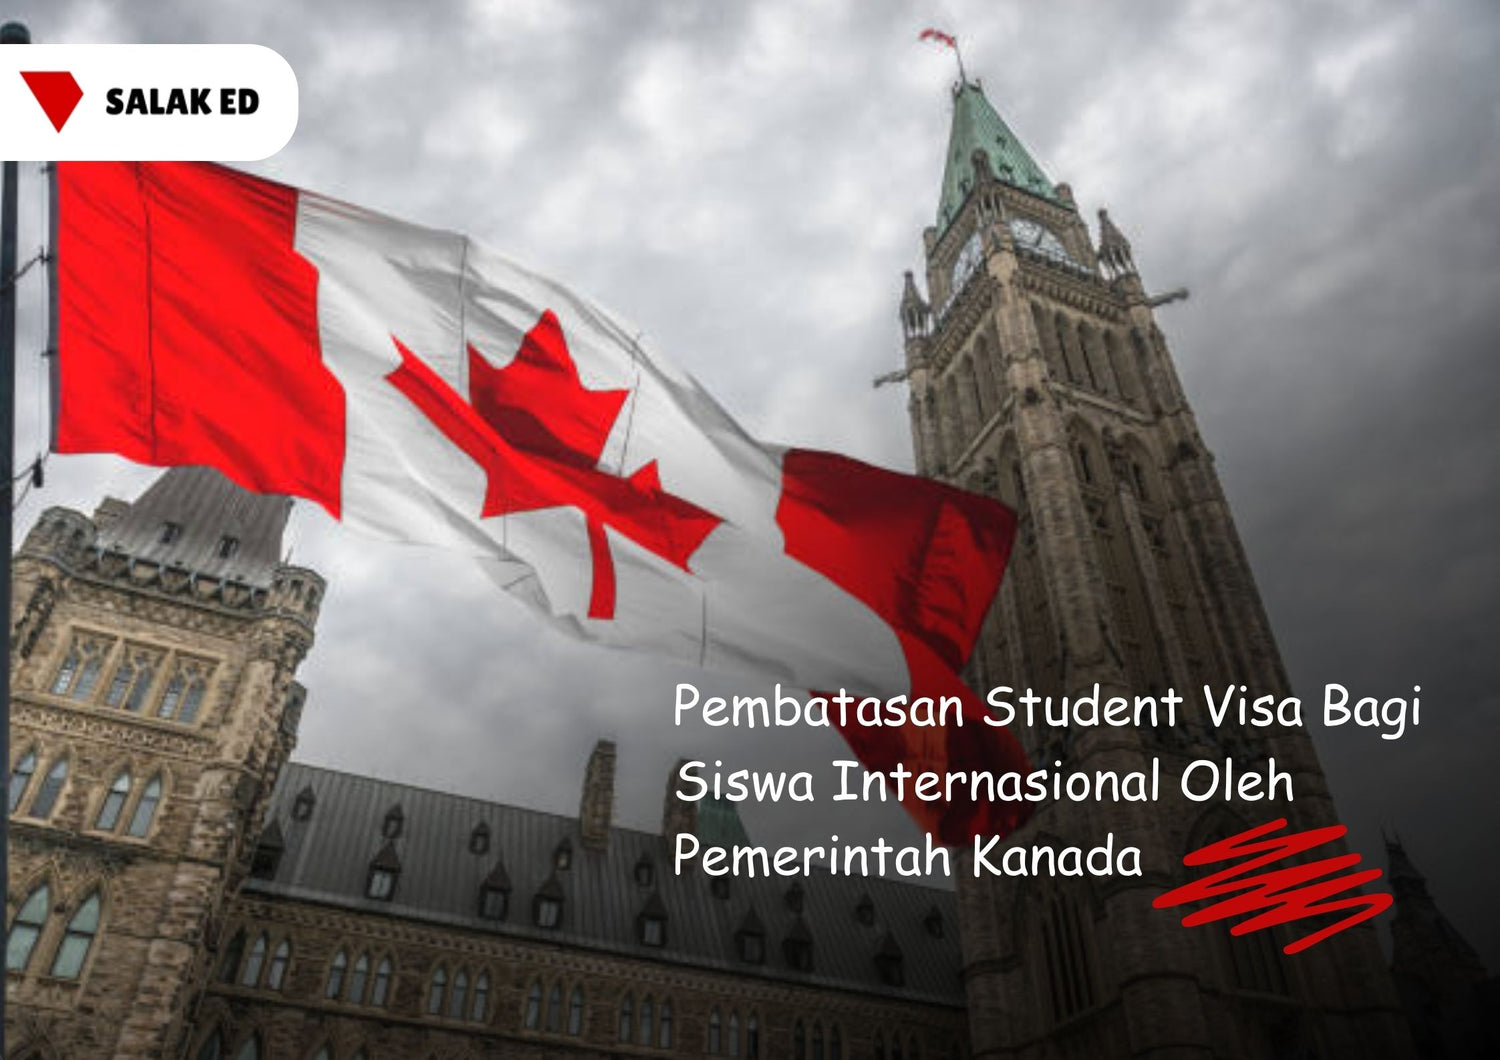 Pembatasan Student Visa Bagi Siswa Internasional Oleh Pemerintah Kanada